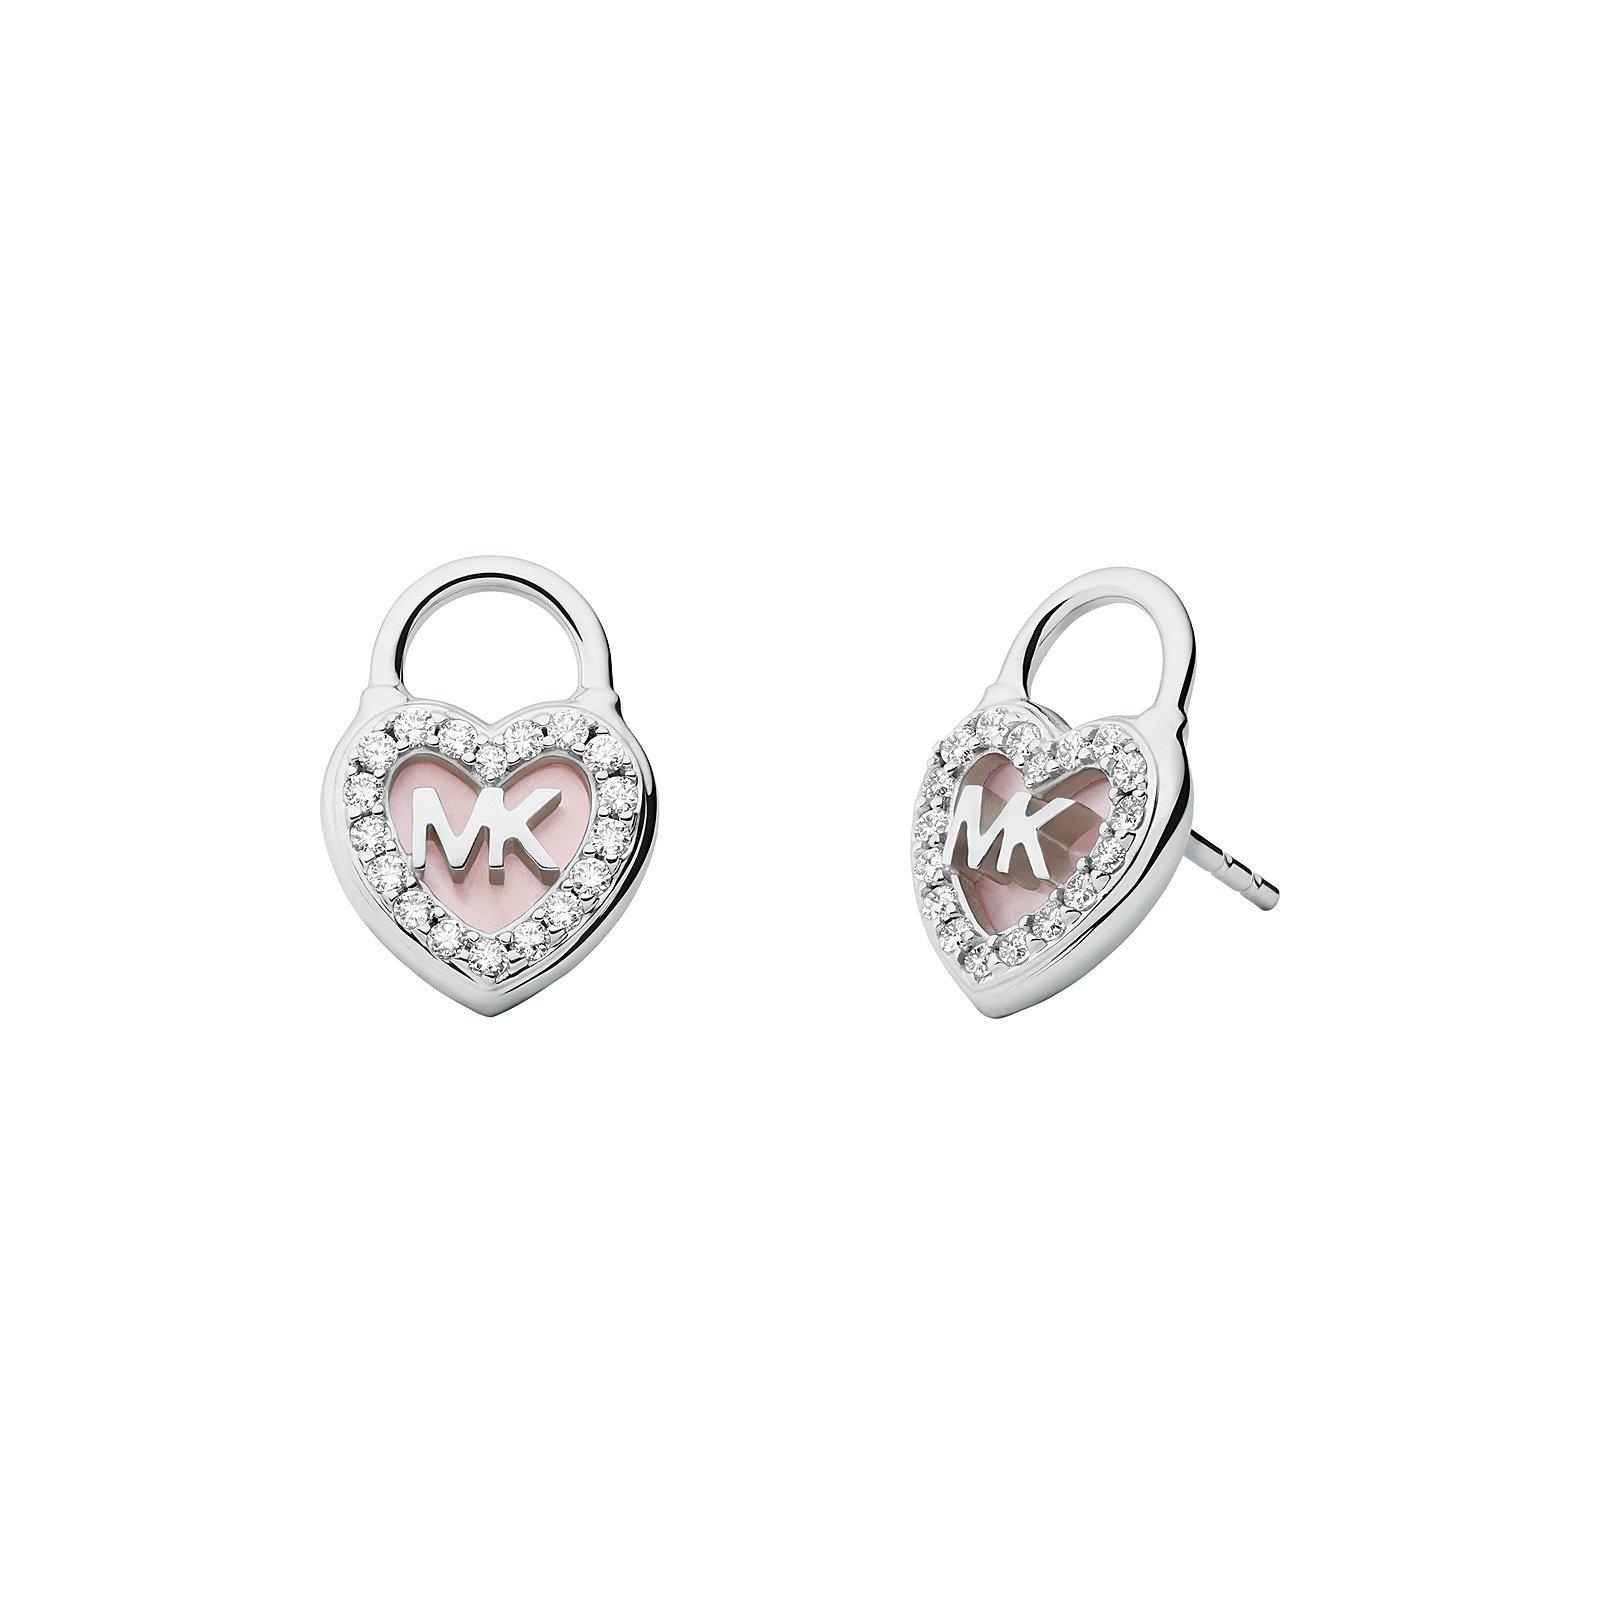 Michael Kors Lock Stud Earrings | 0132079 | Beaverbrooks the Jewellers